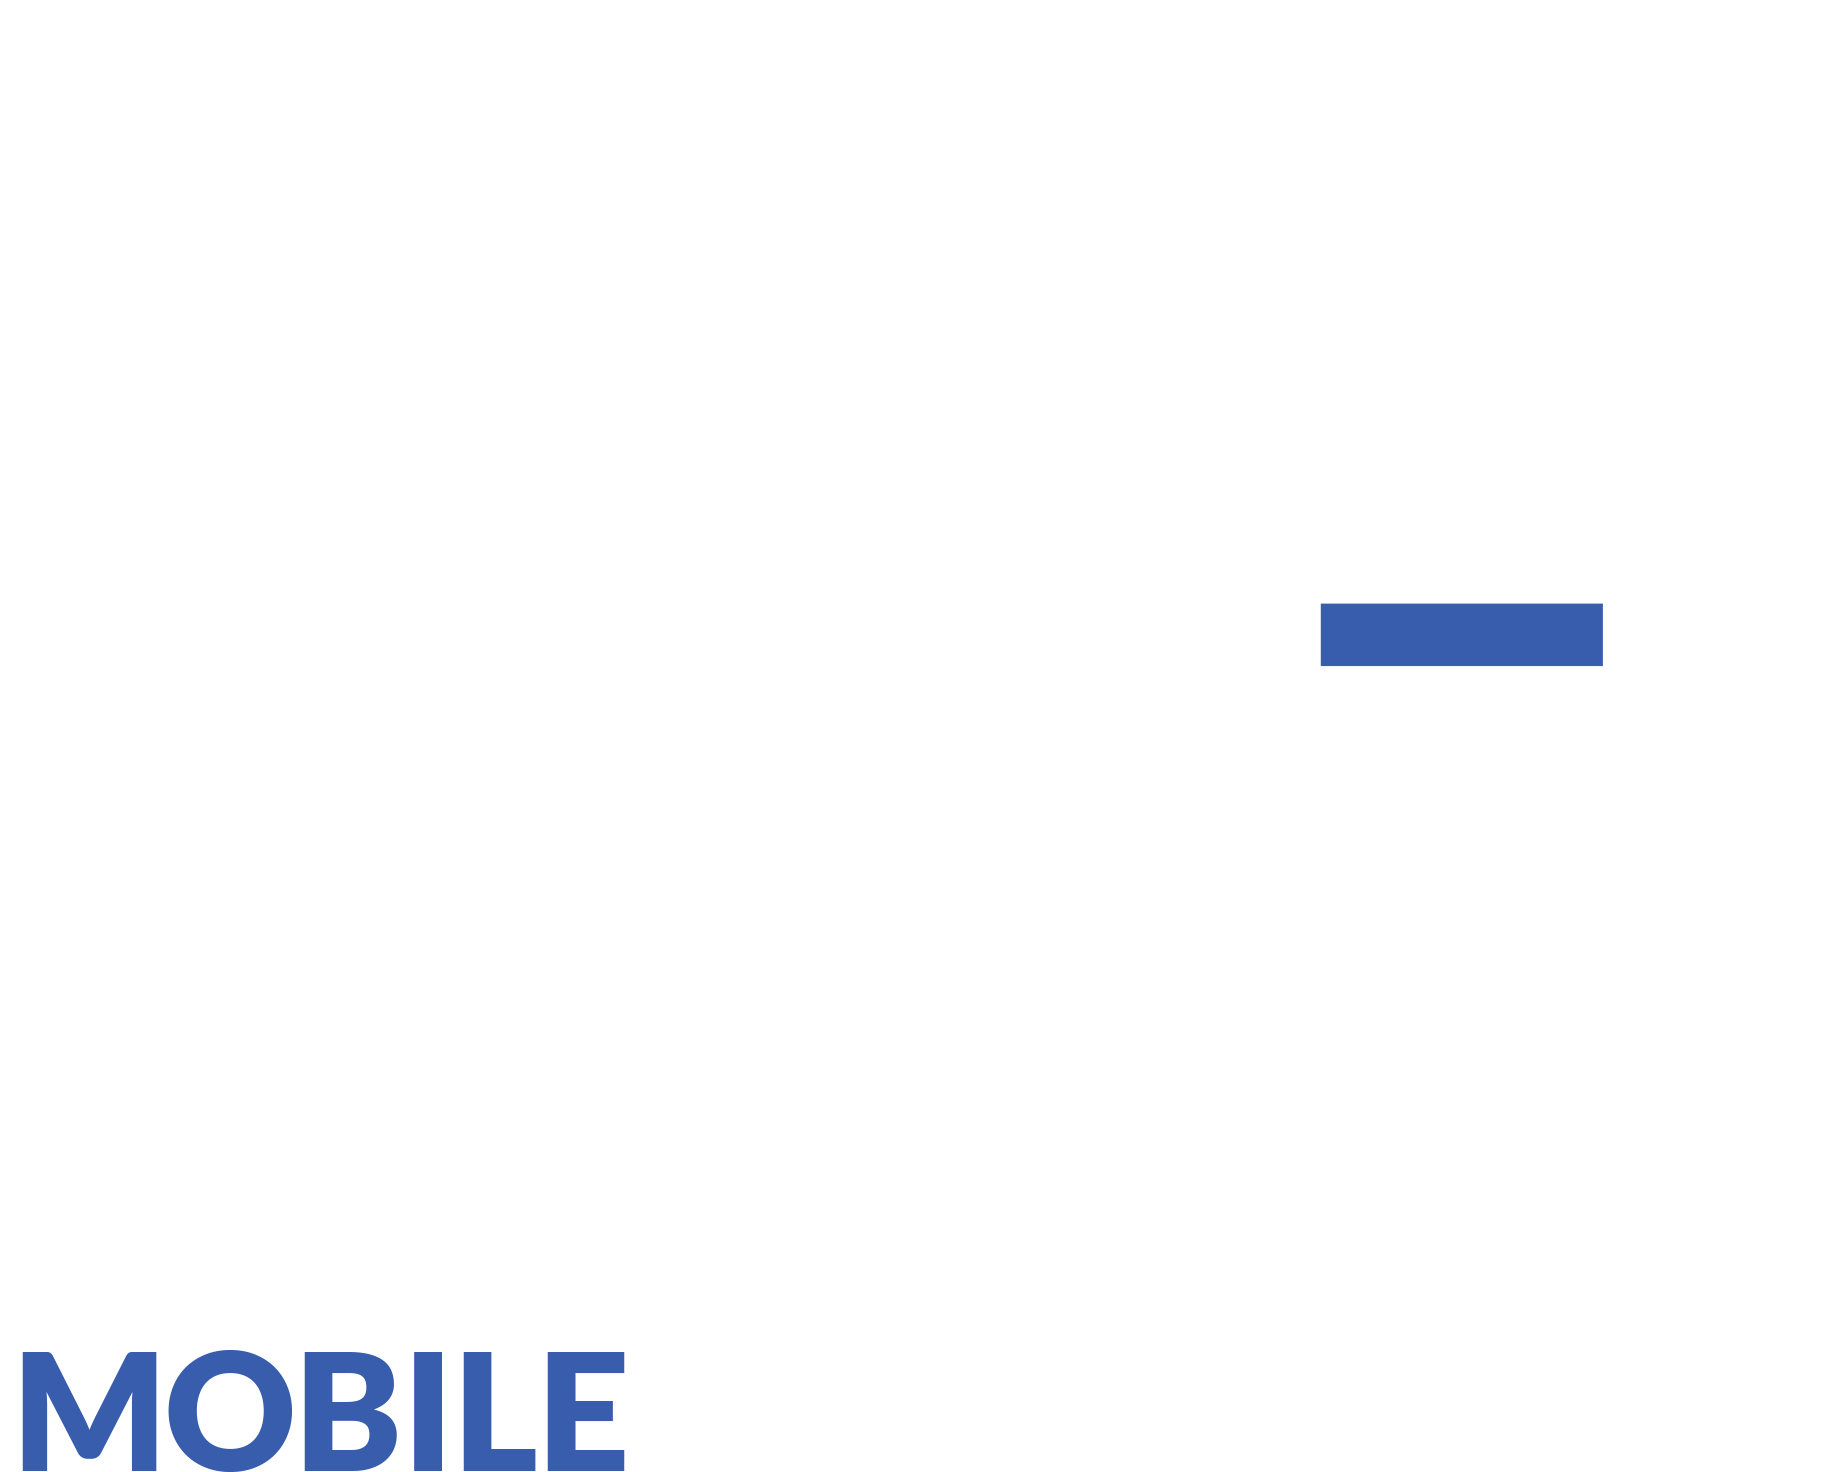 Mobile Pocket Office Logo